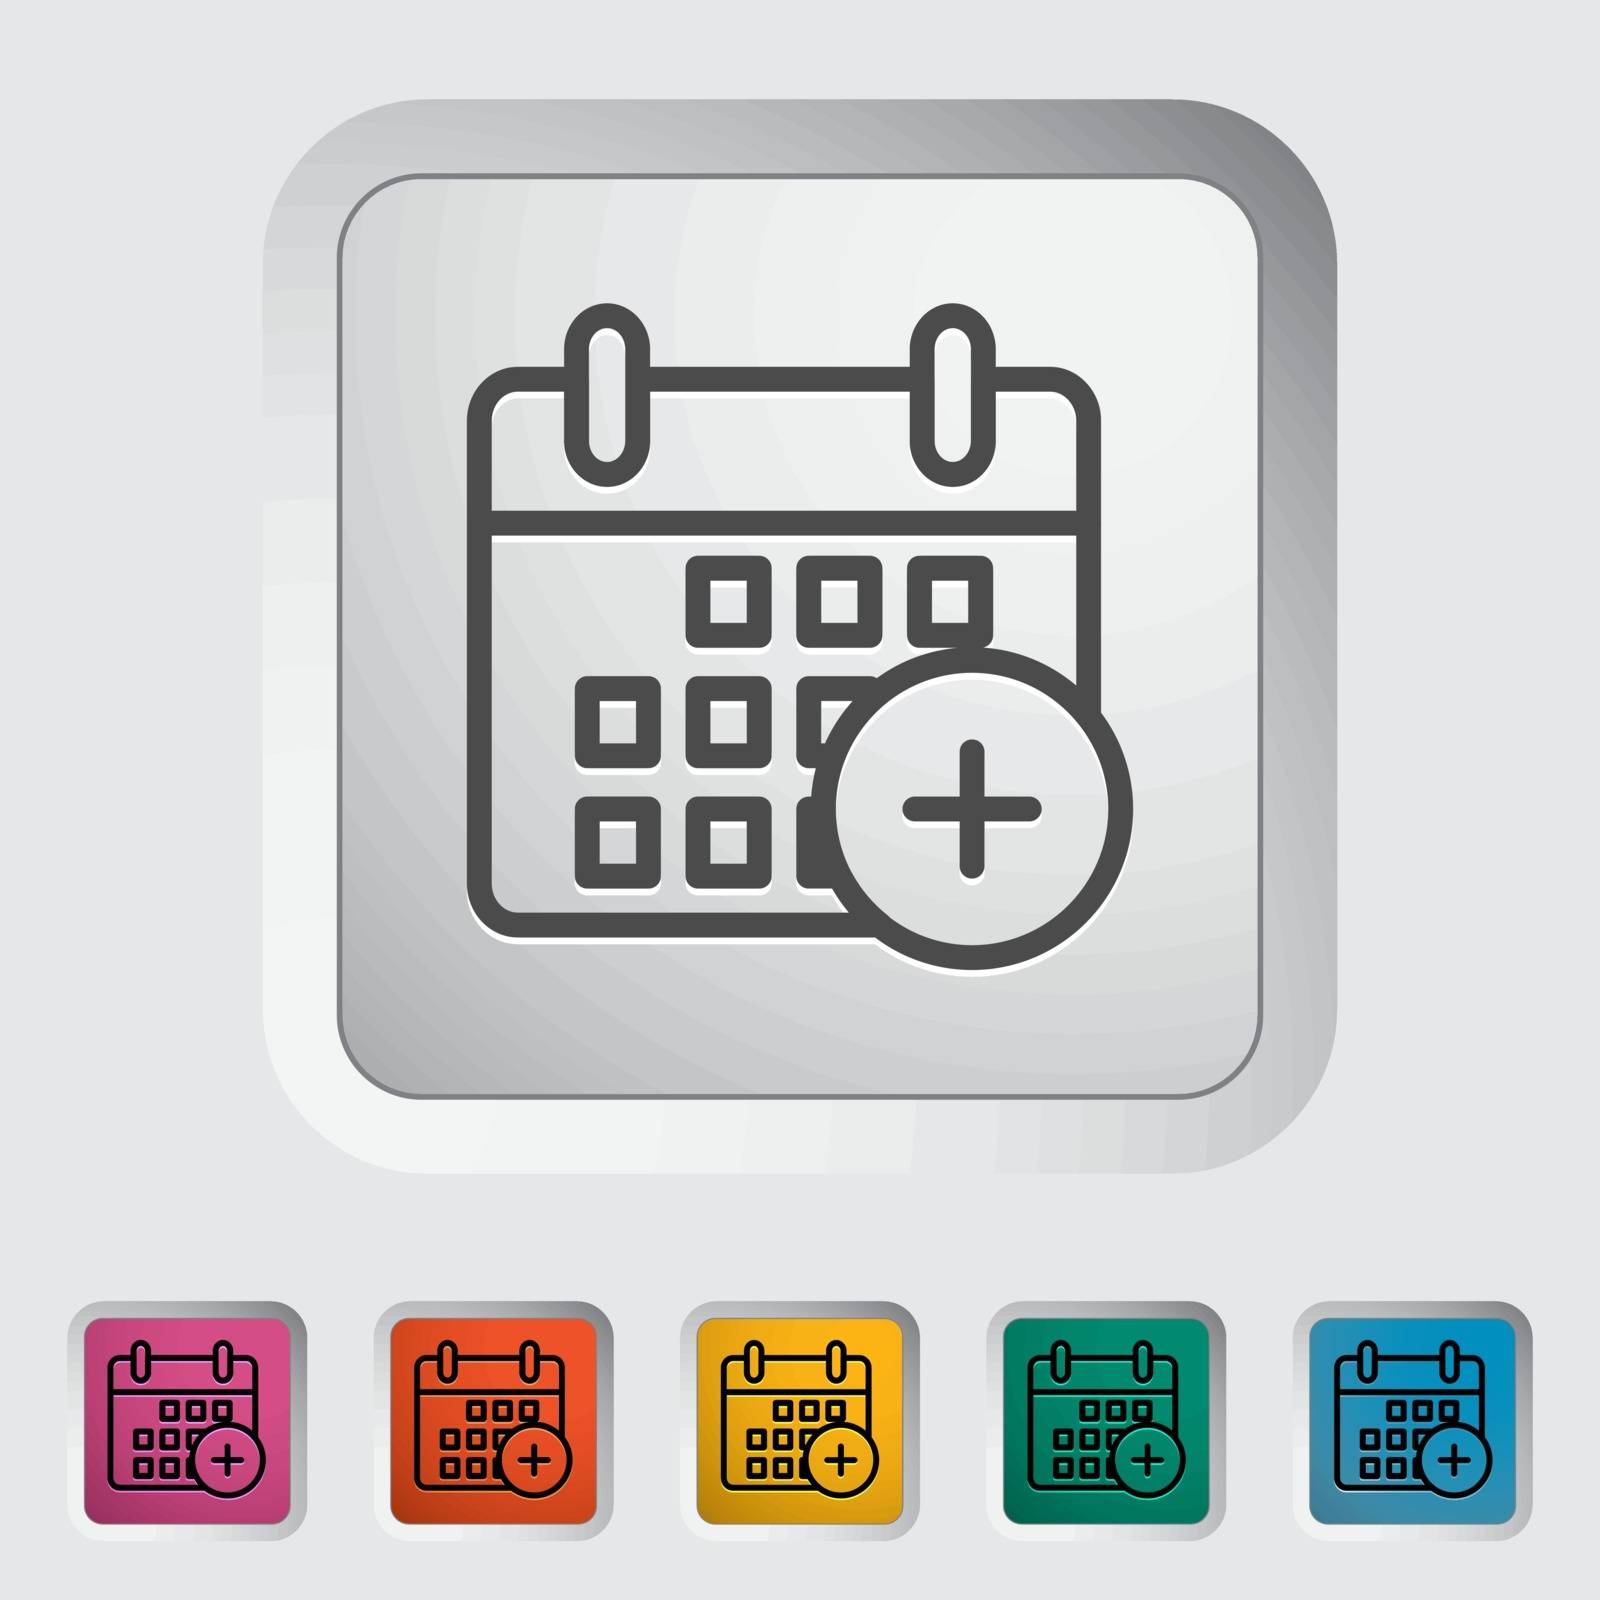 Calendar stroke icon on the button. Vector illustration.